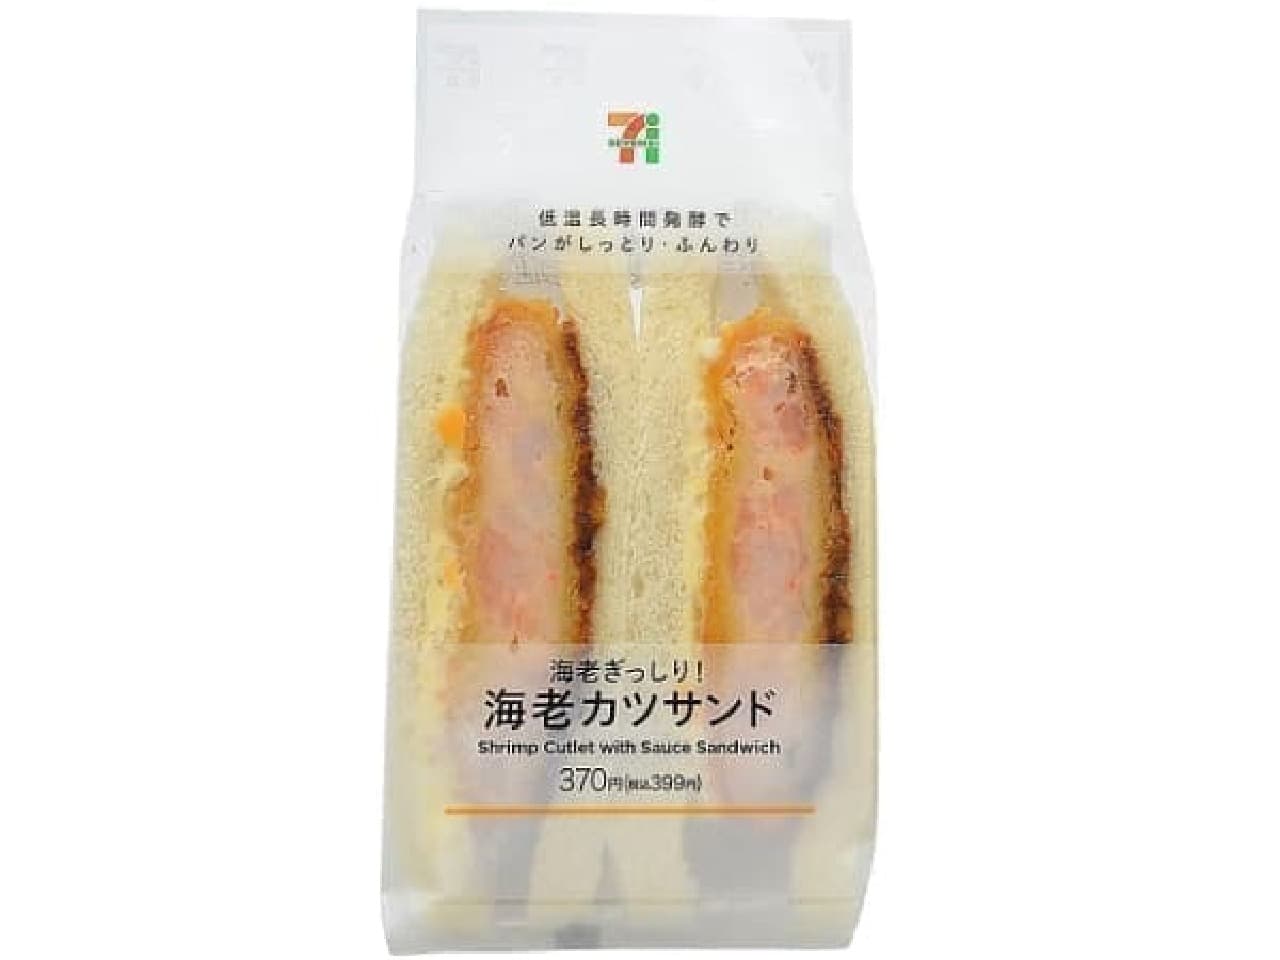 7-ELEVEN "Shrimp cutlet sandwich"